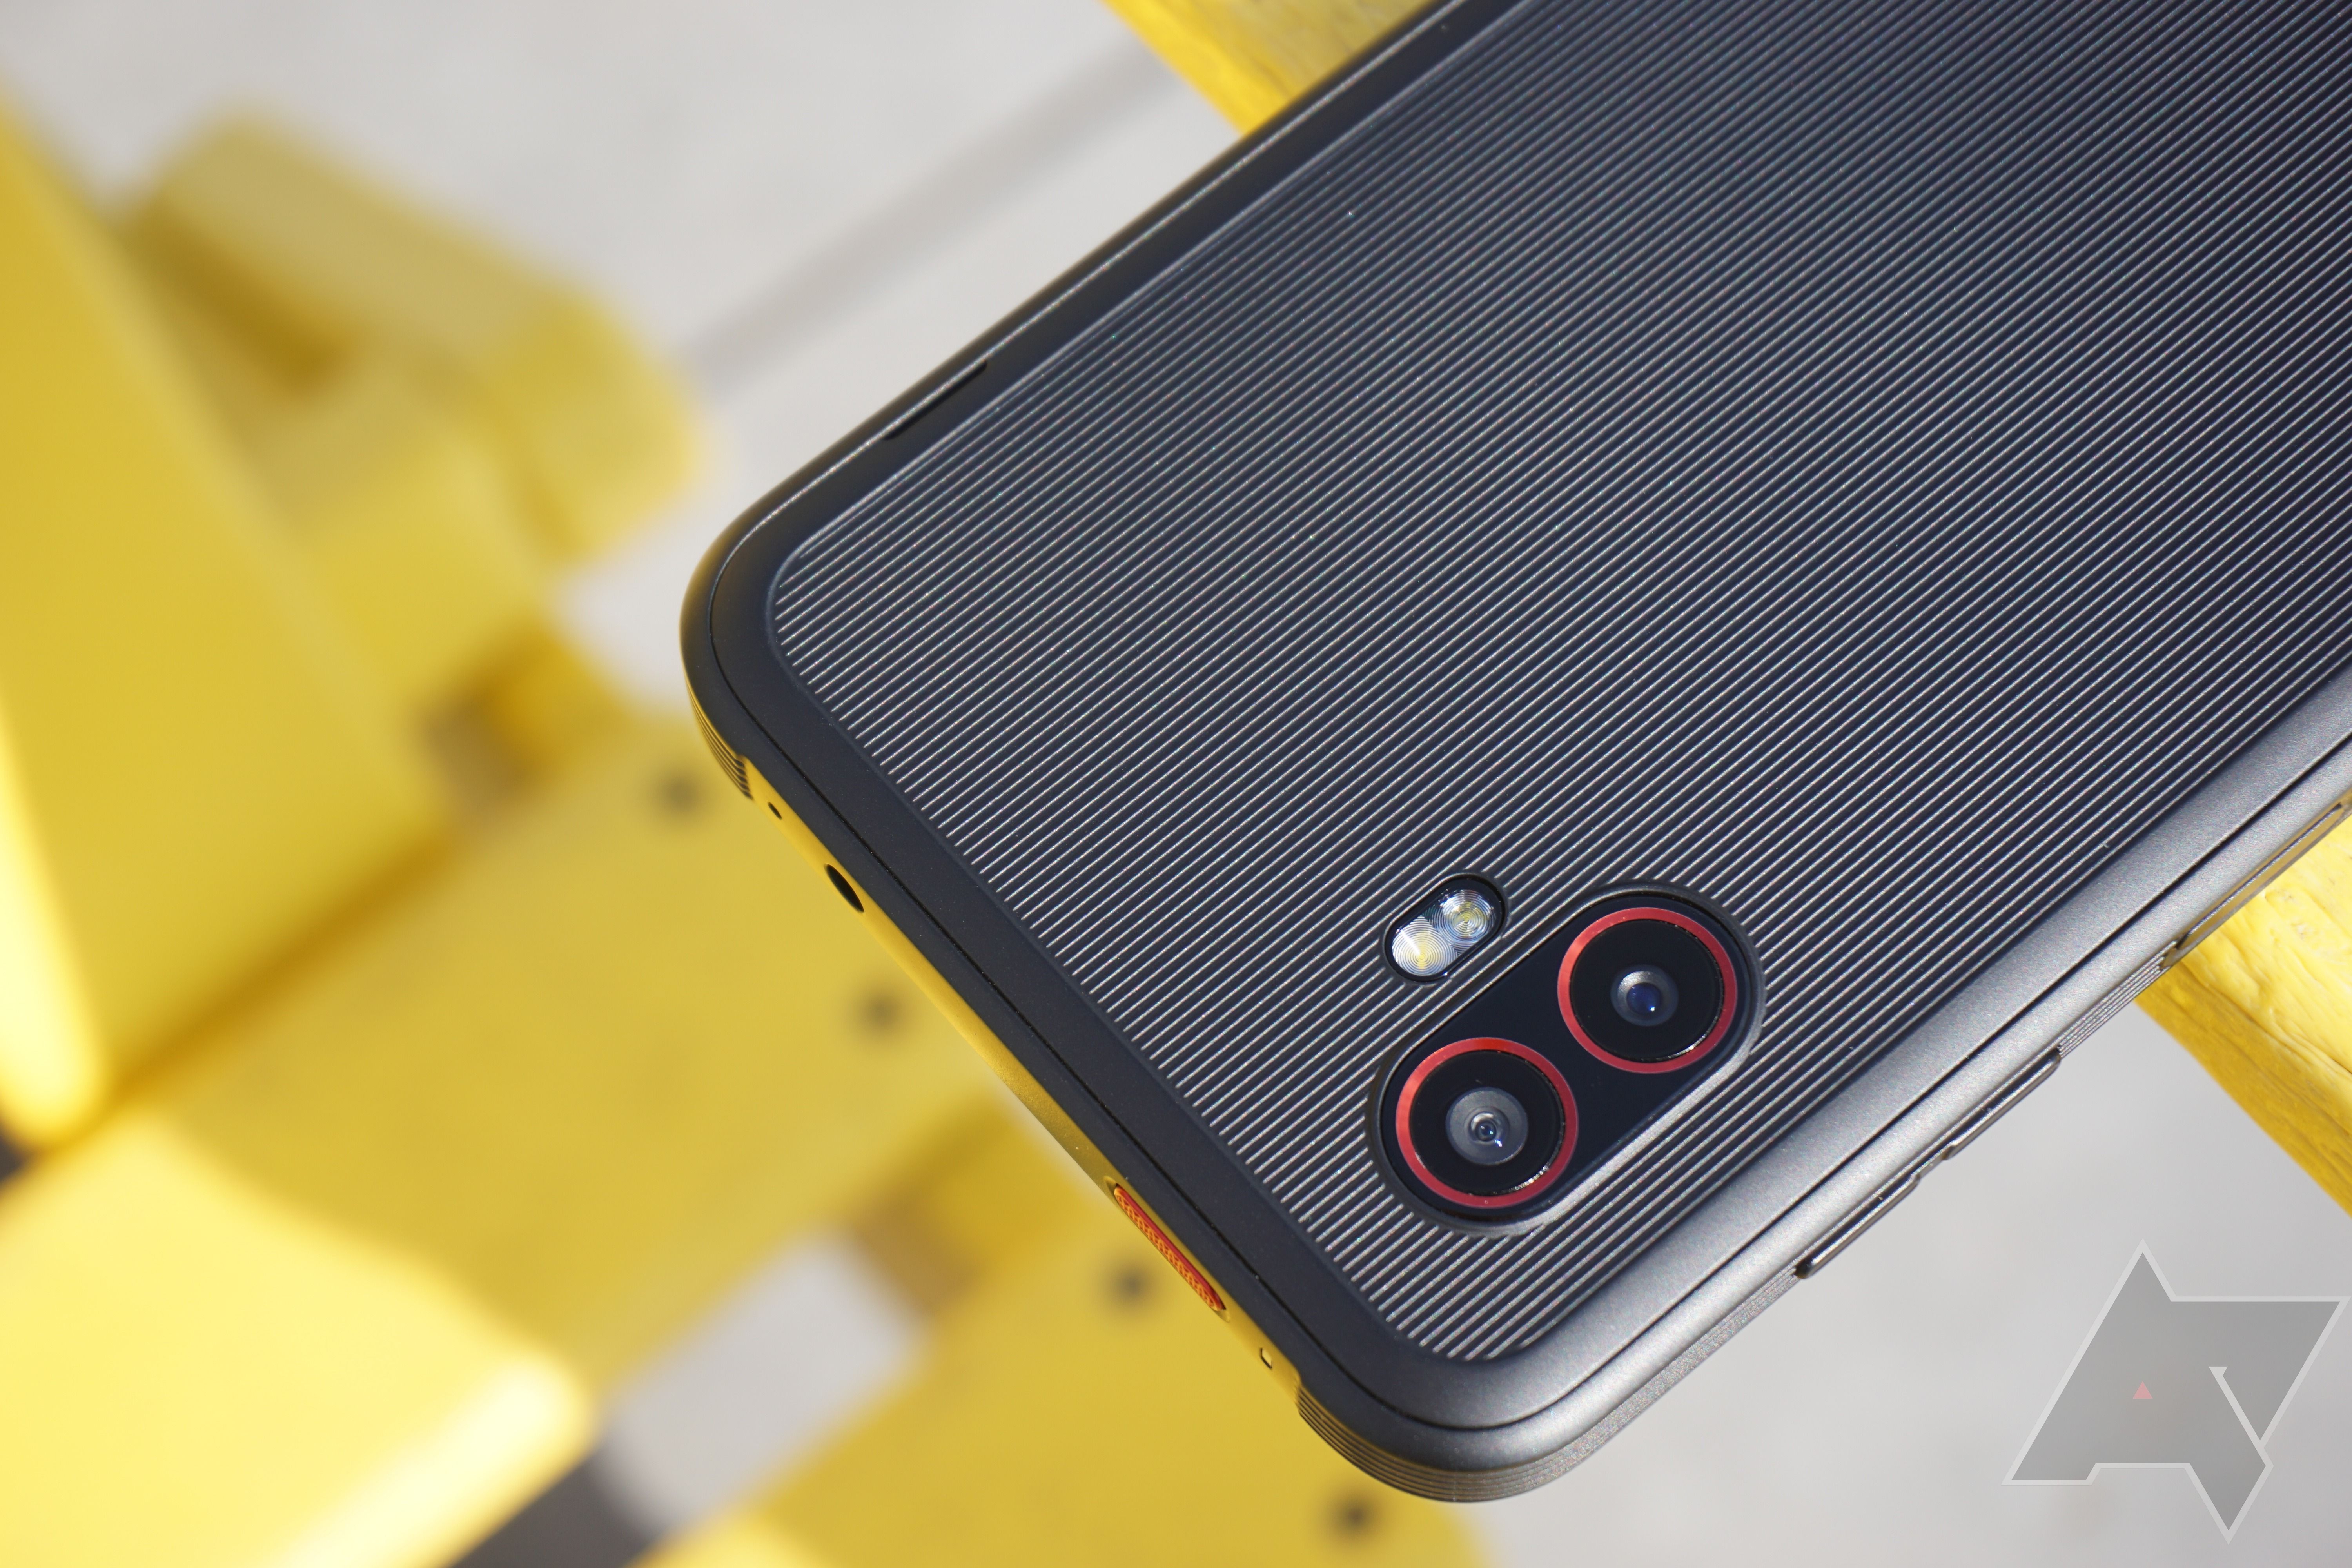 Uma imagem da parte superior do Samsung XCover6 Pro mostrando os módulos da câmera com um banco de ripas amarelo ao fundo.